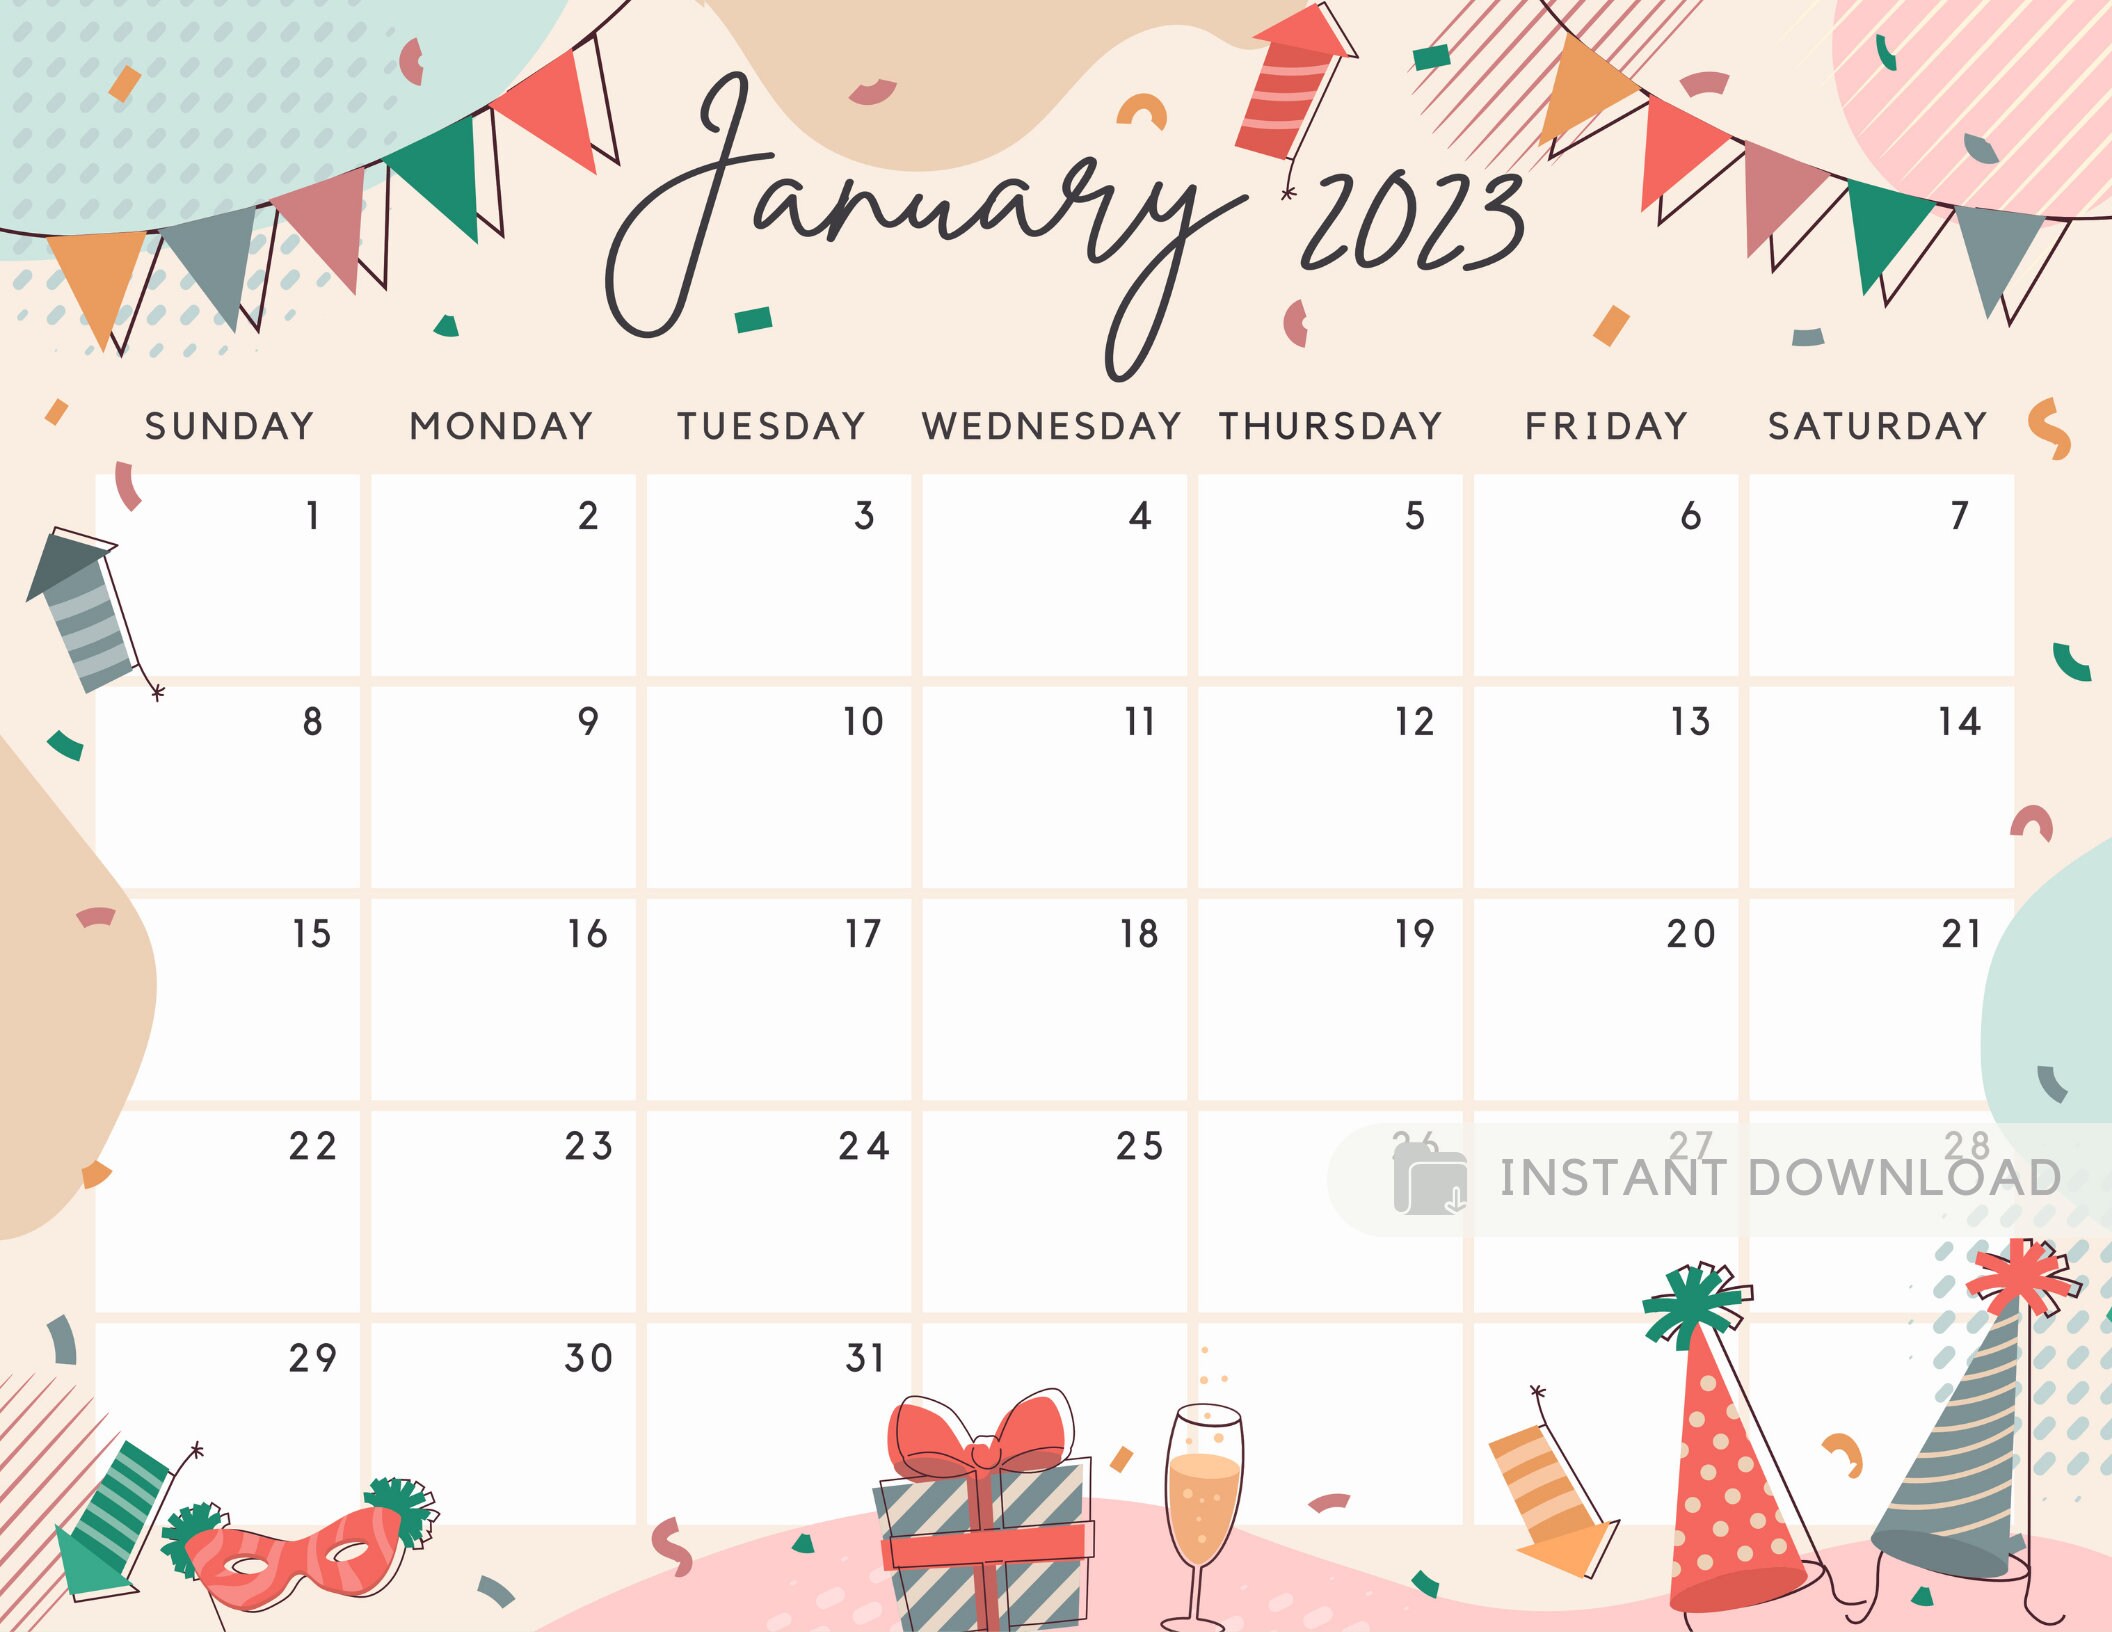 Calendar 2023 2023 Wall Calendar January 2023 December 2023 12 Months 